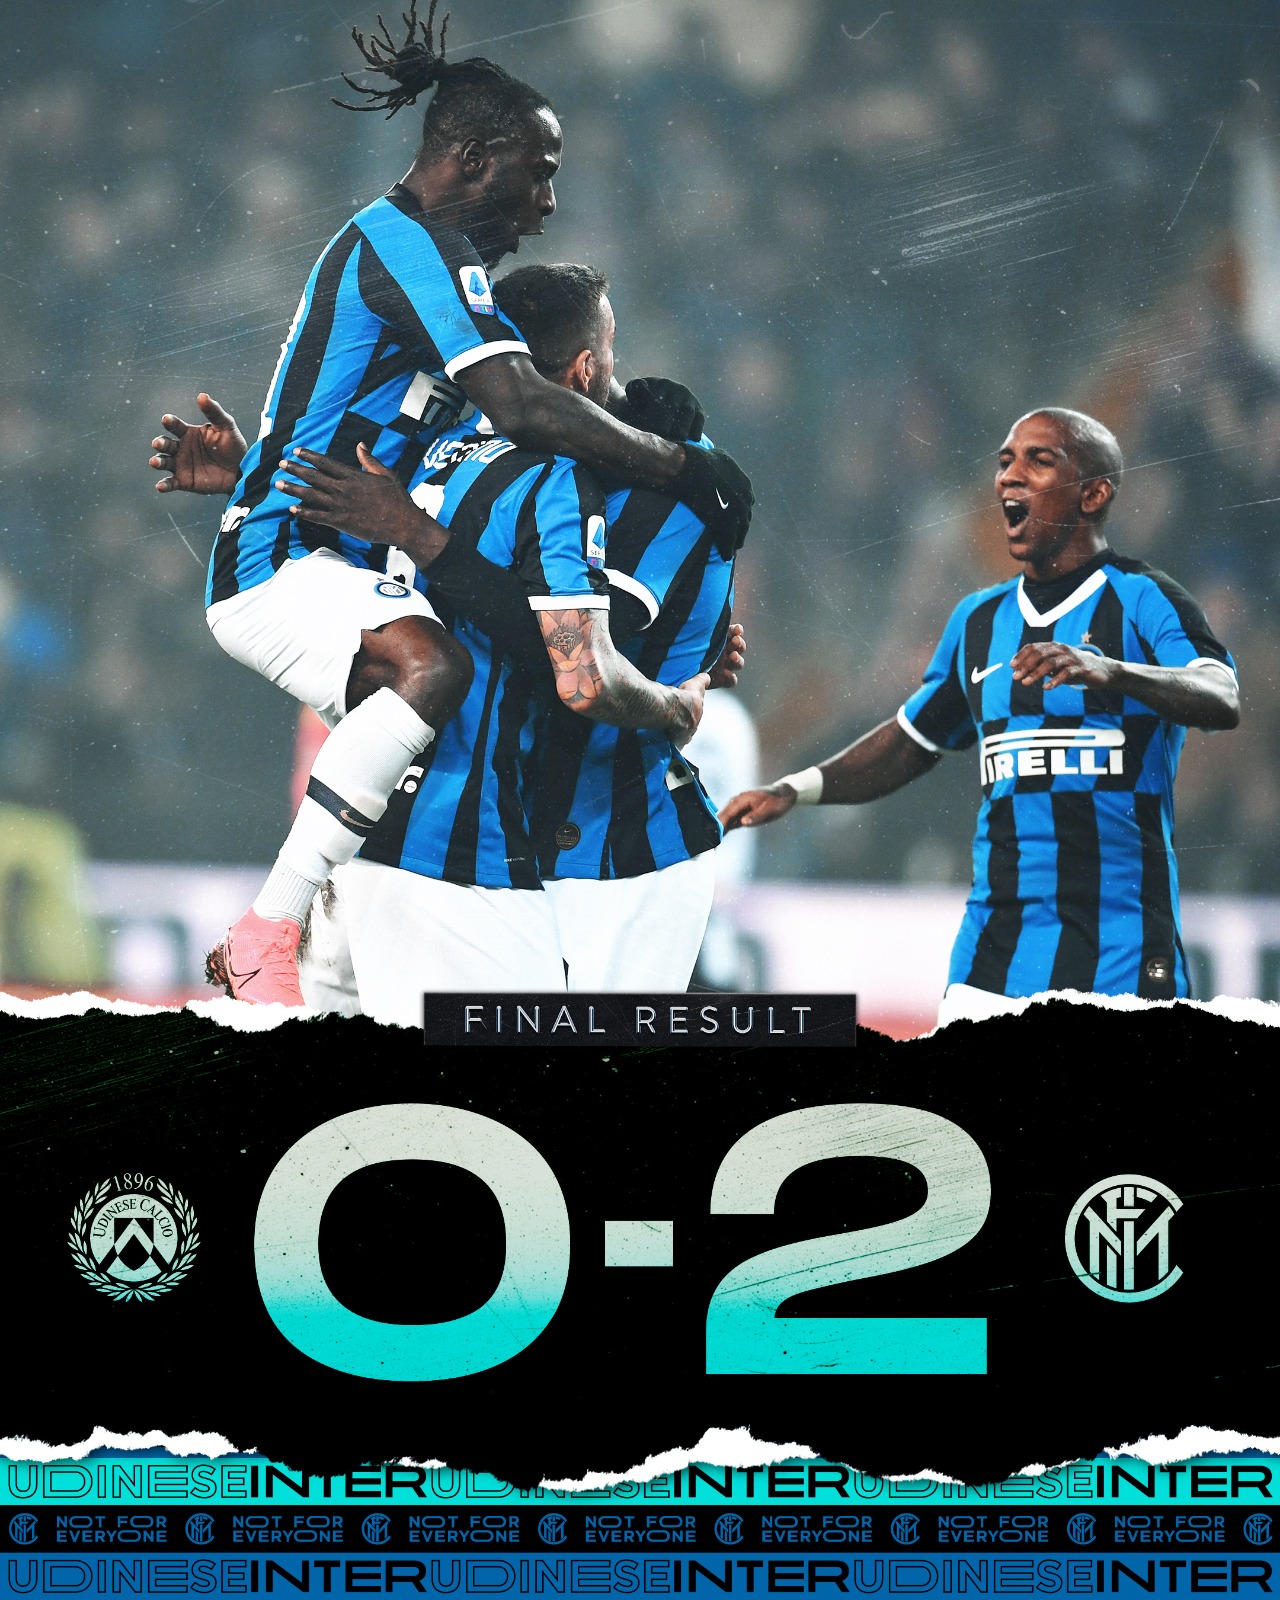 Una doppietta di Lukaku trascina l'Inter: 0-2 all'Udinese e striscia di pareggi interrotta